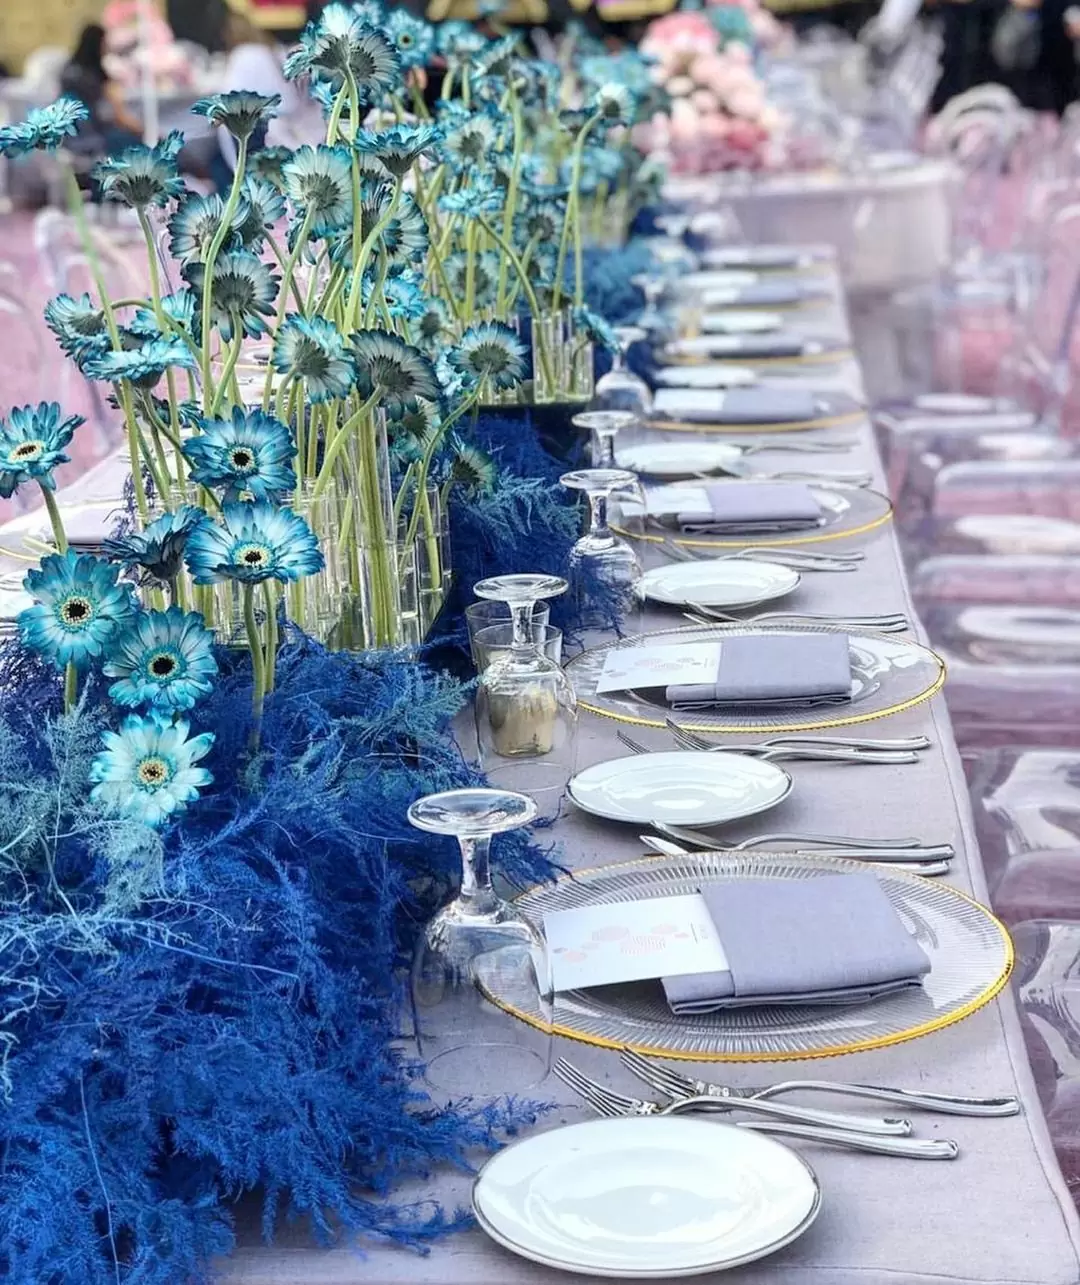 Пять самых модных цветов рассказываем о свадебной палитре следующего года. - jk-severnuy-rechnoi-port.ru